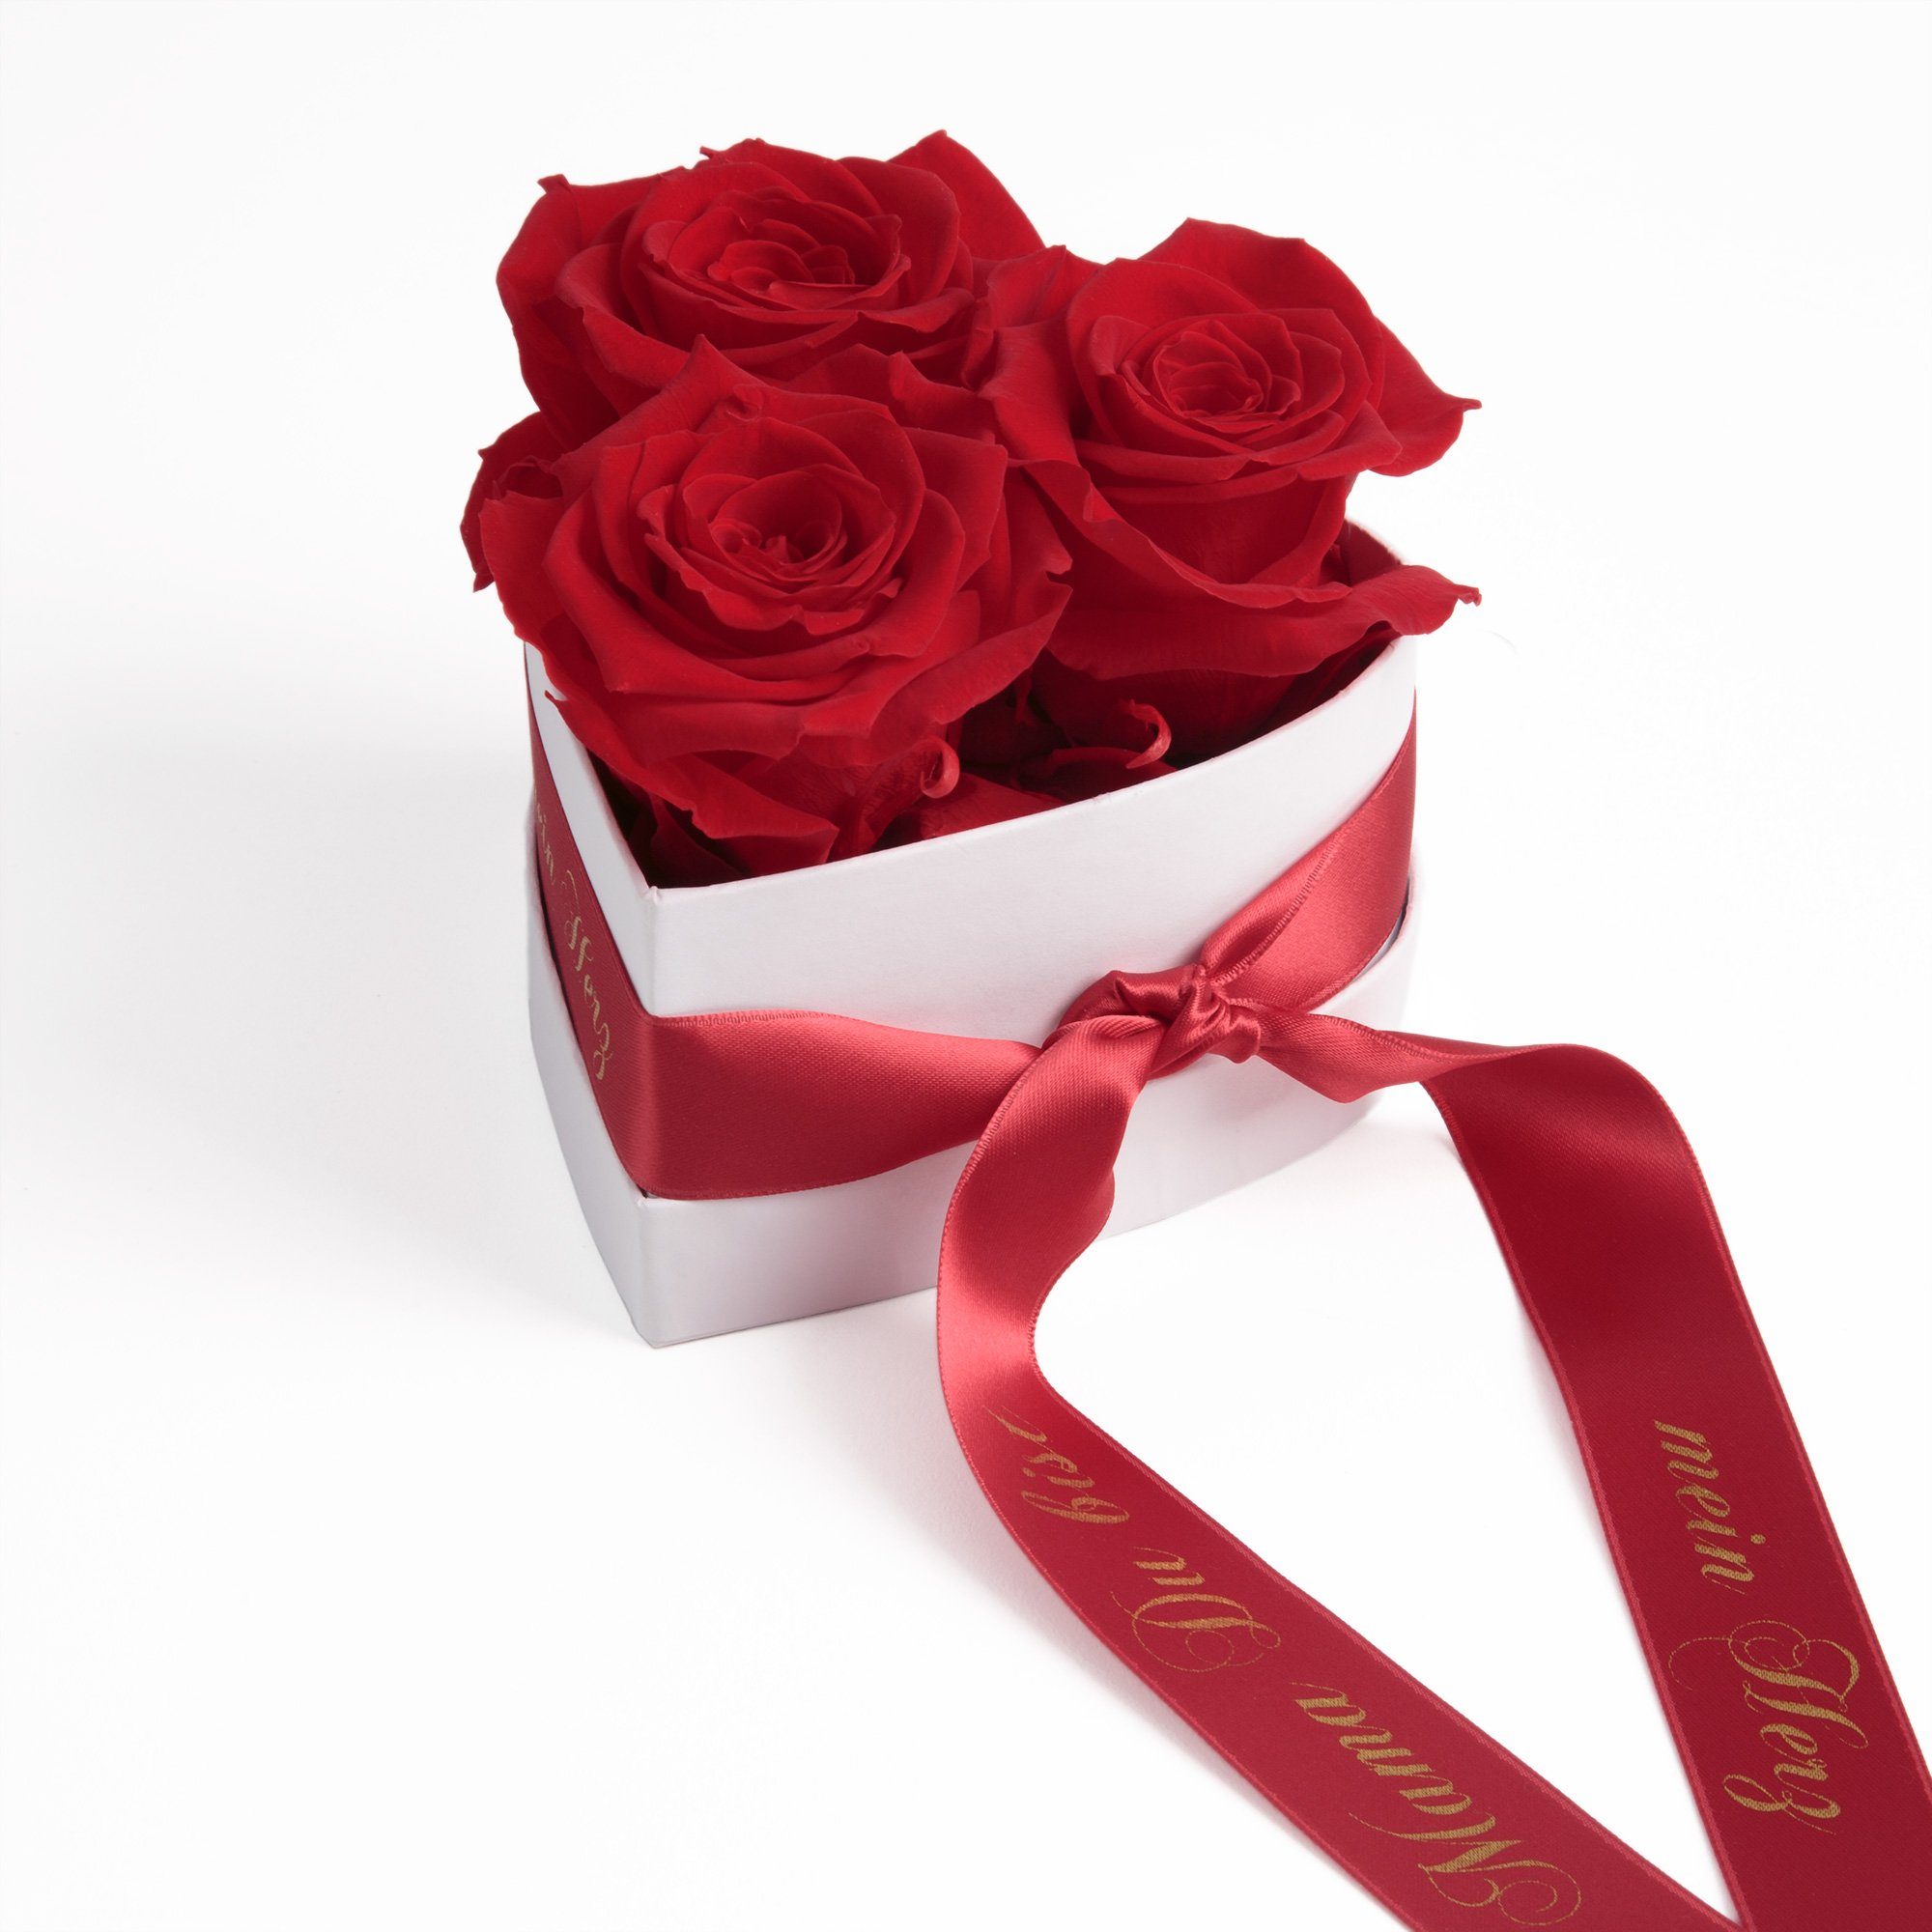 Infinity Höhe Rose, Mama rot bist echte mein Rosenbox Jahre Geschenkbox haltbar Geschenk Rosen Heidelberg, 10 Herz Blumen ROSEMARIE Kunstblume SCHULZ Du 3 cm, 3